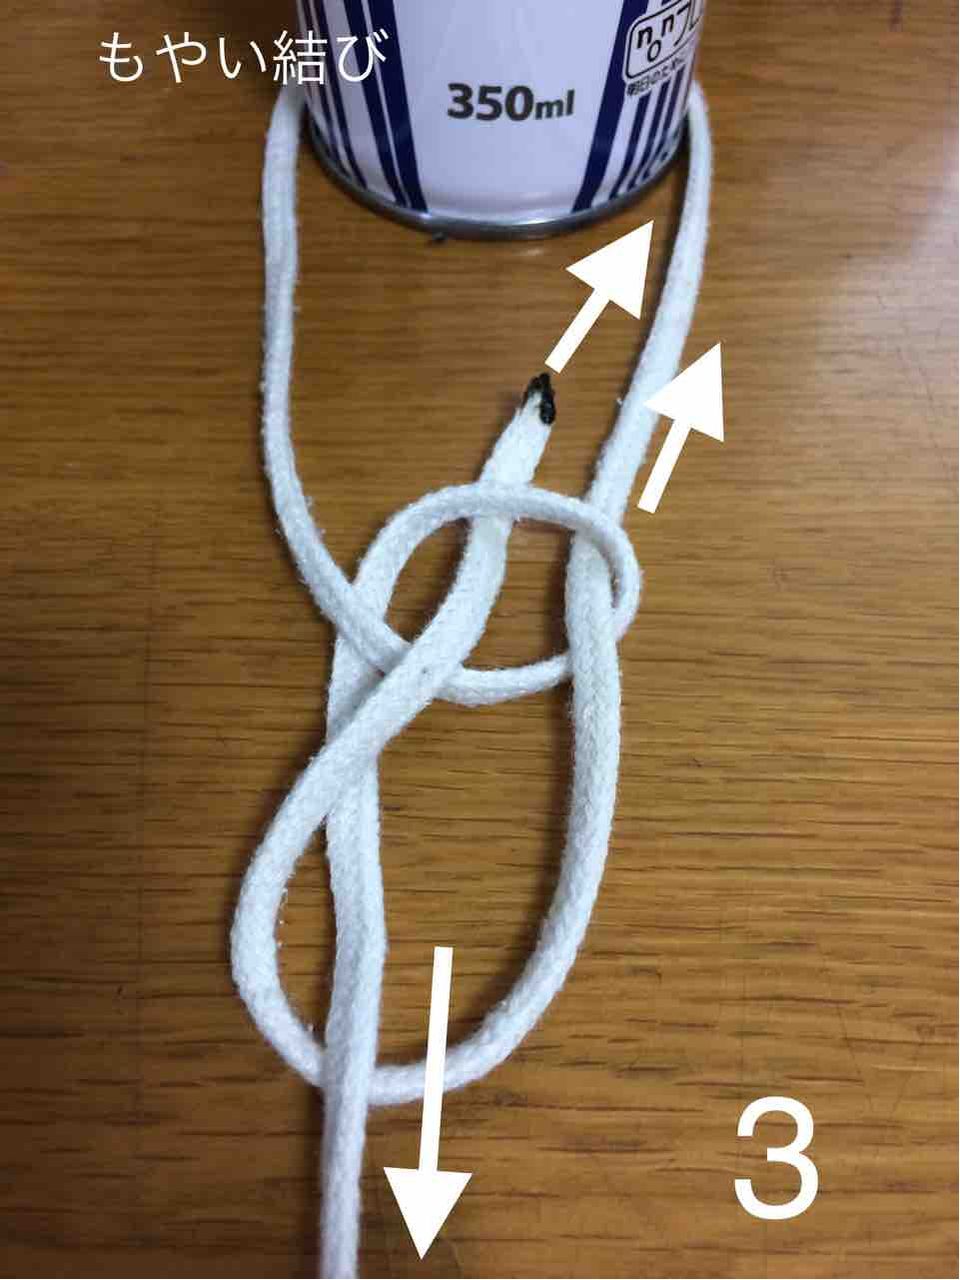 結び方 ロープ